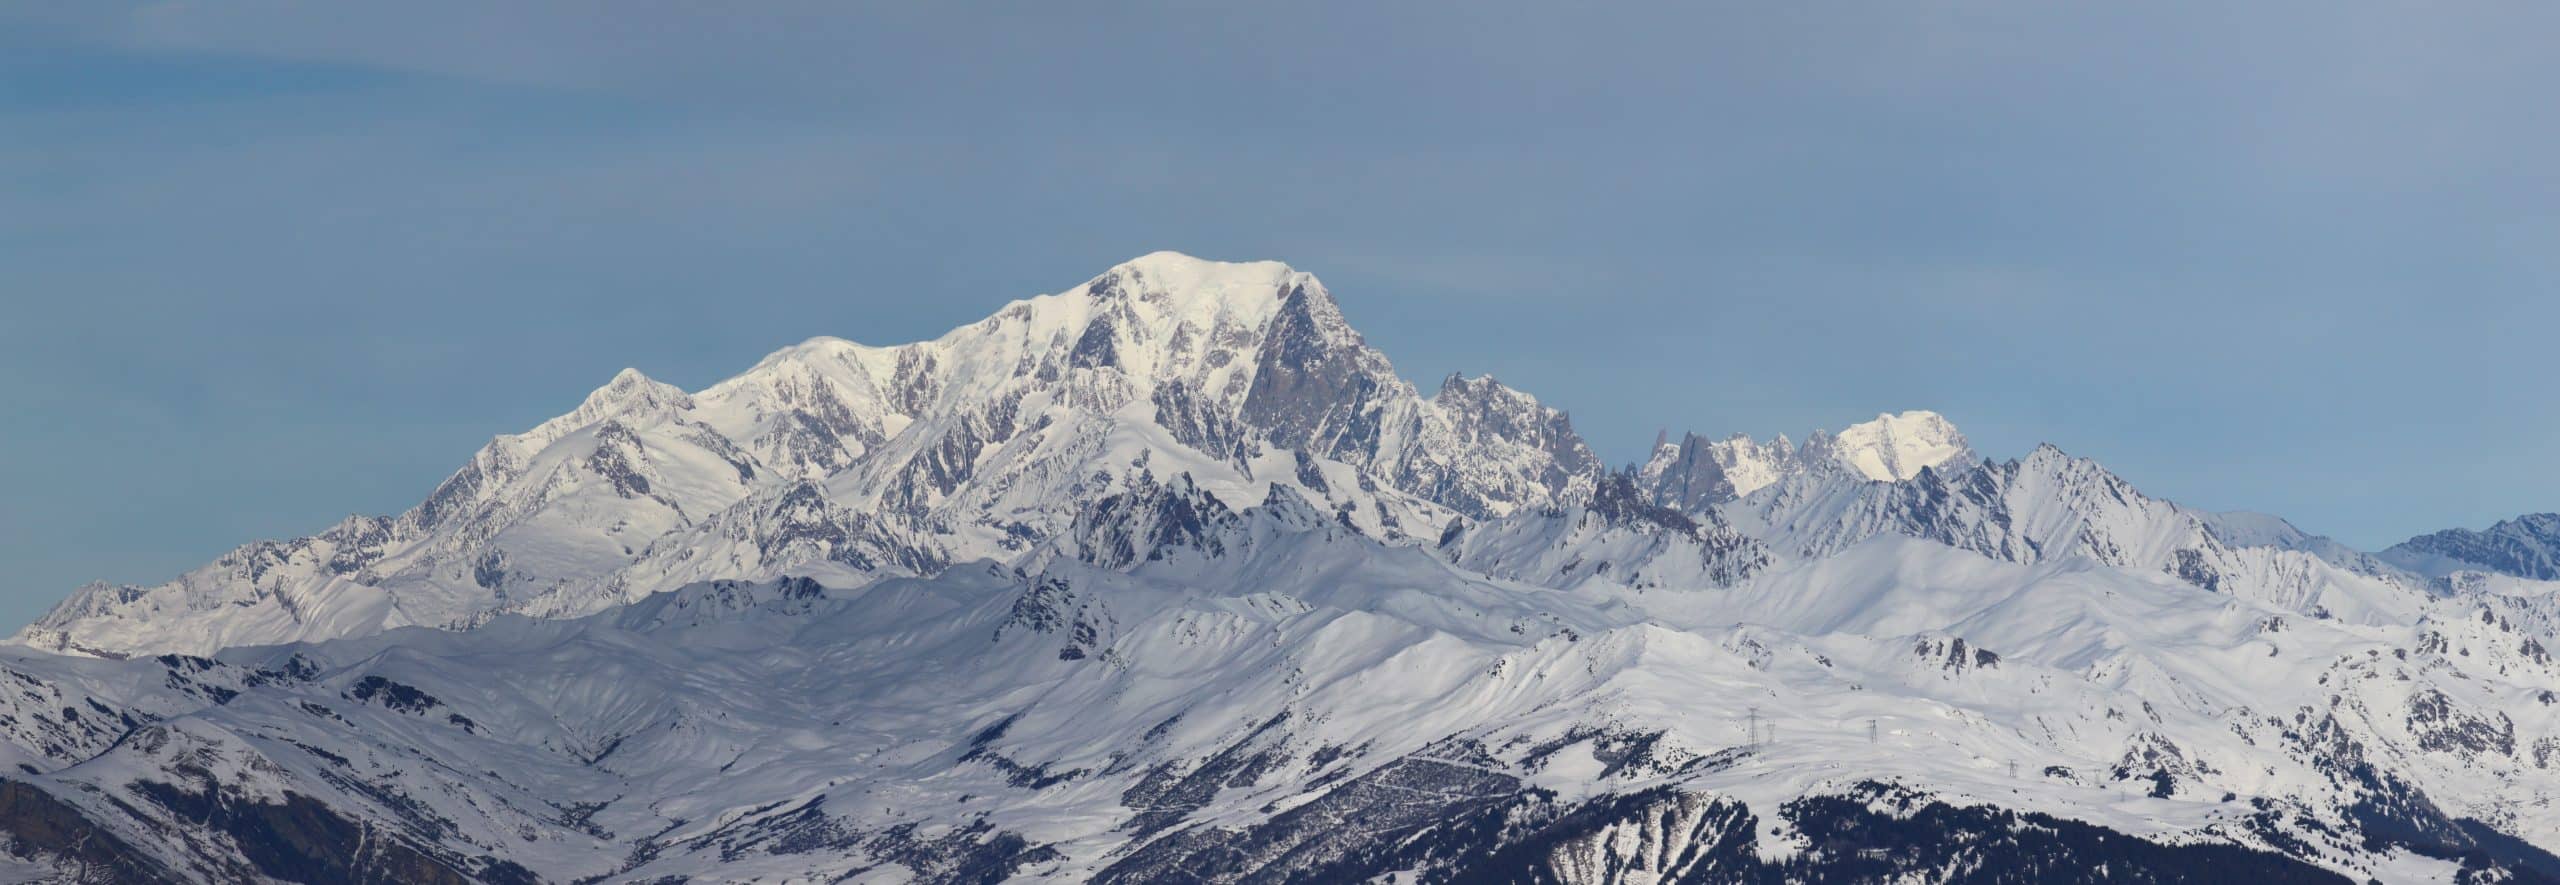 Meerdere Christus Voorloper Mont Blanc - Tour du Mont Blanc